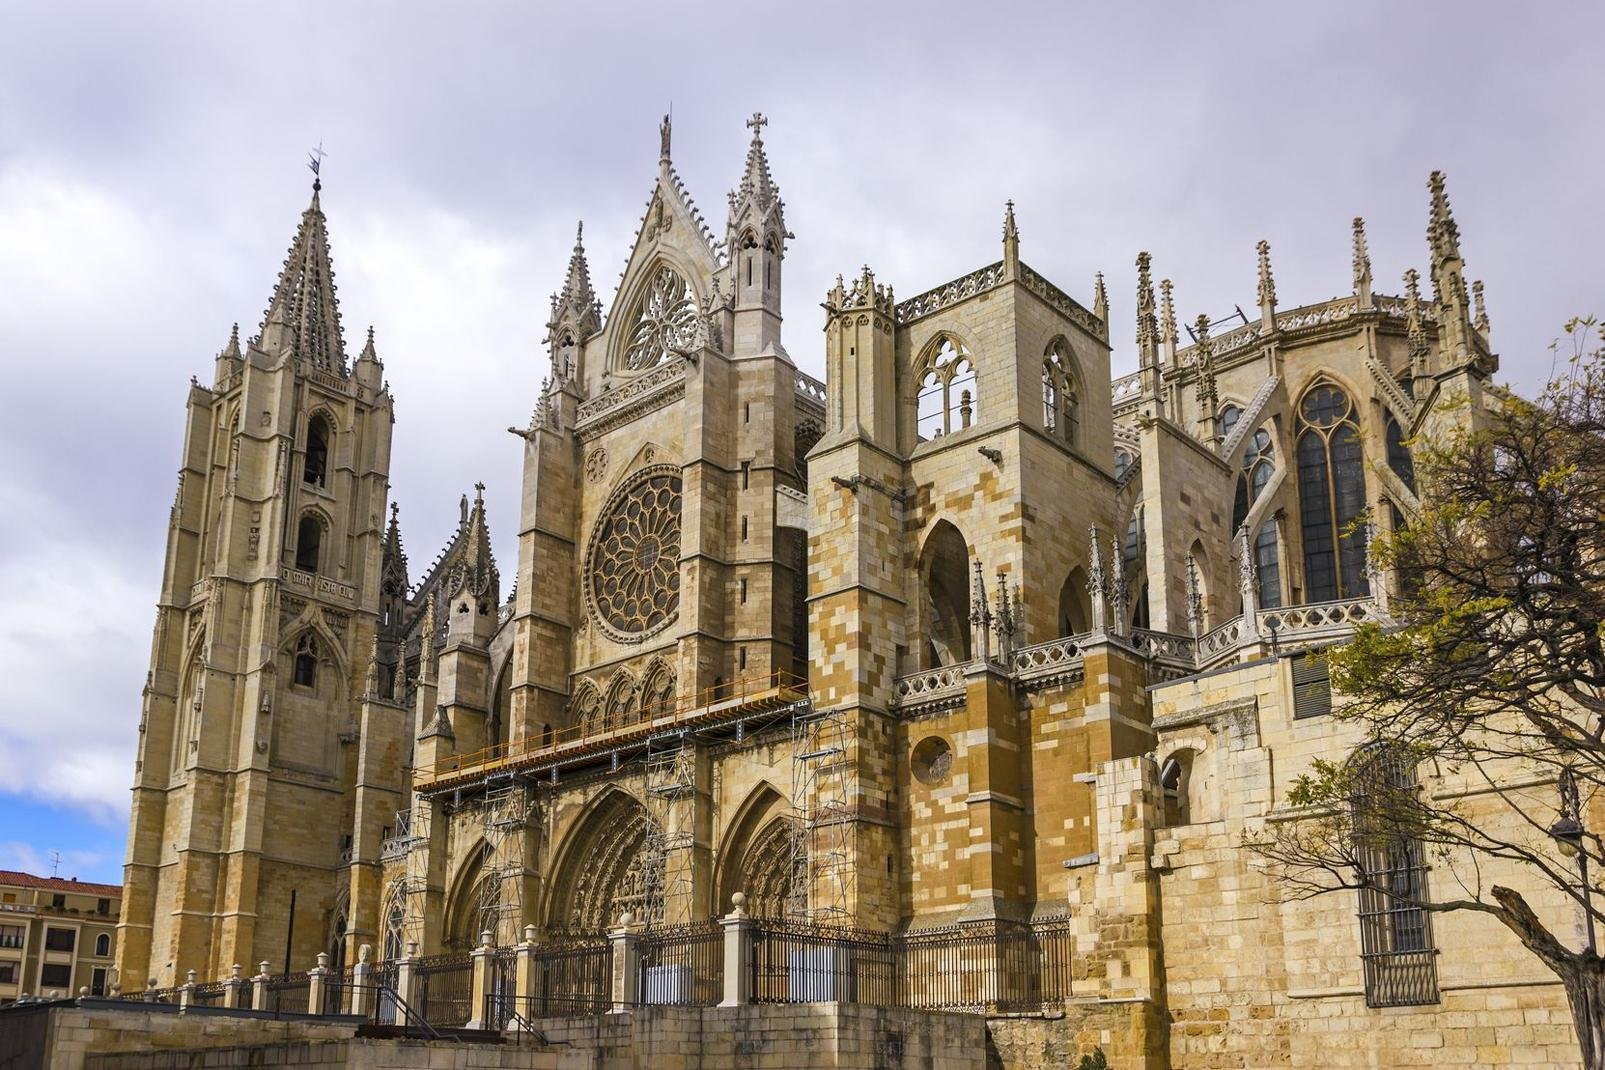 Millénaire, accueillante, calme et croisée des chemins de Saint-Jacques de Compostelle. La ville de León peut à juste titre s'enorgueillir d'un riche patrimoine médiéval et moderne, et surtout d'avoir un vitrail qui compte parmi les plus beaux du monde dans sa cathédrale, qui à son tour est l'un des meilleurs exemples de l'architecture gothique espagnole.Tant sereine que vivante, elle accueille avec ...